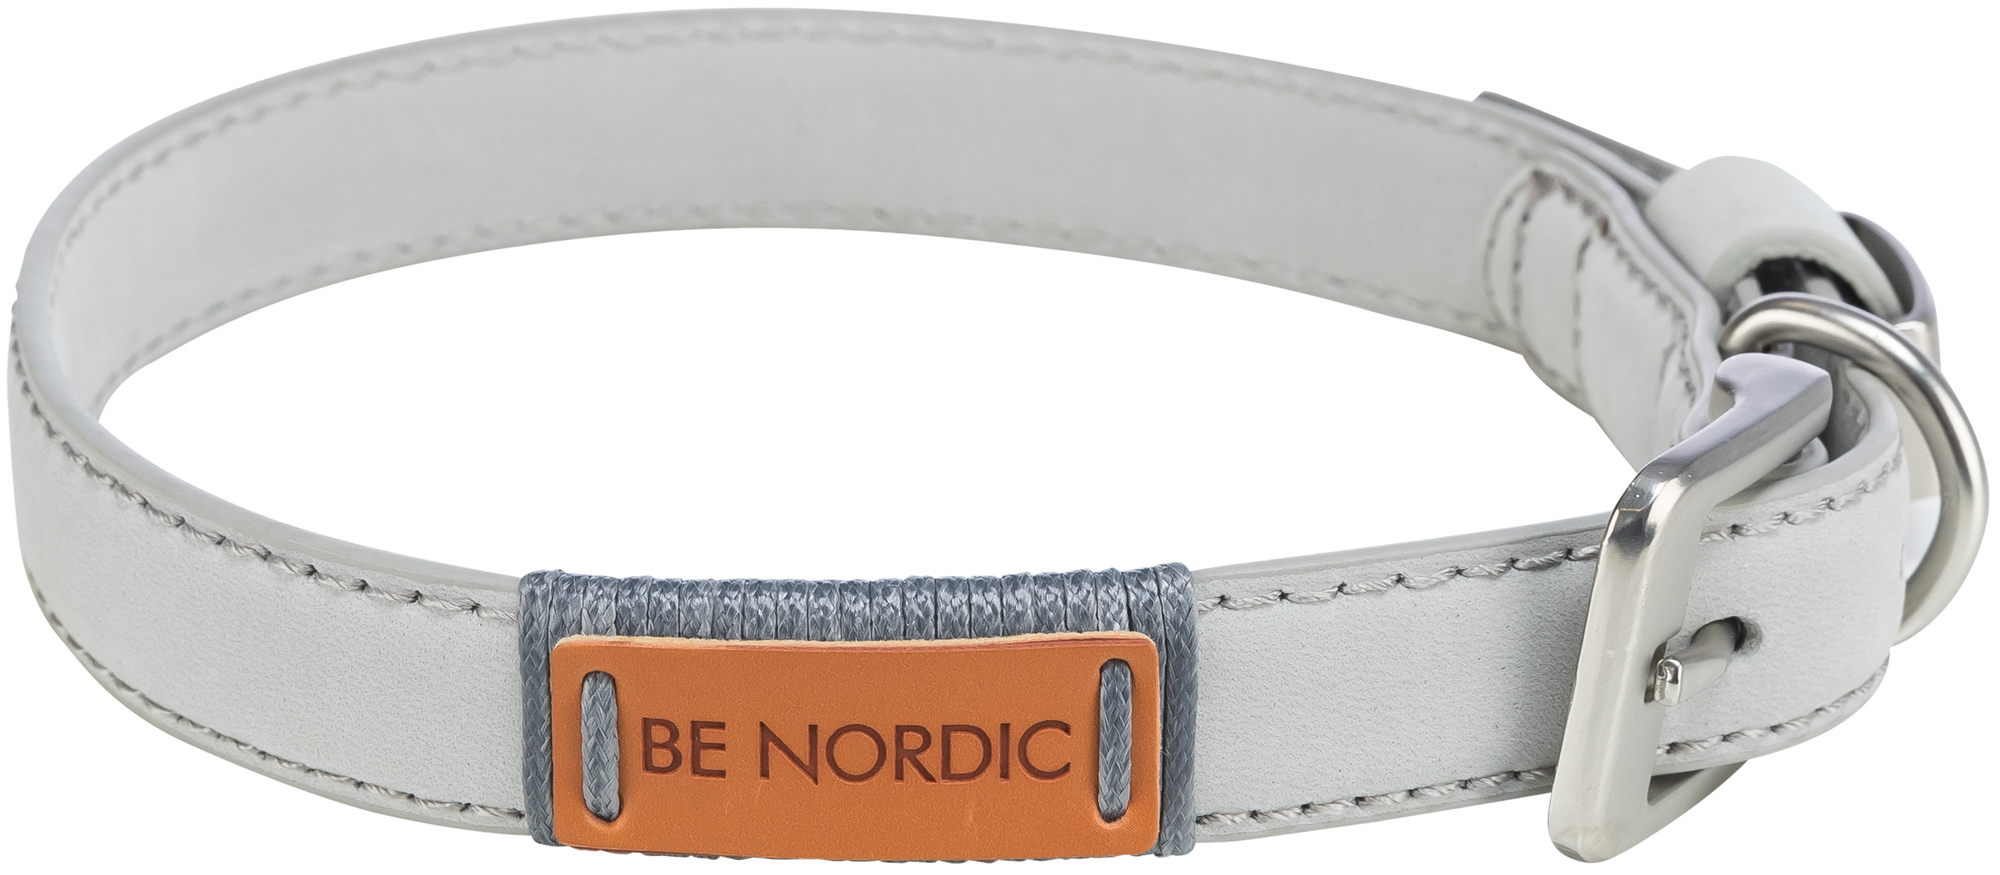 Trixie Be Nordic coleira em couro cinza claro - vários tamanhos disponíveis